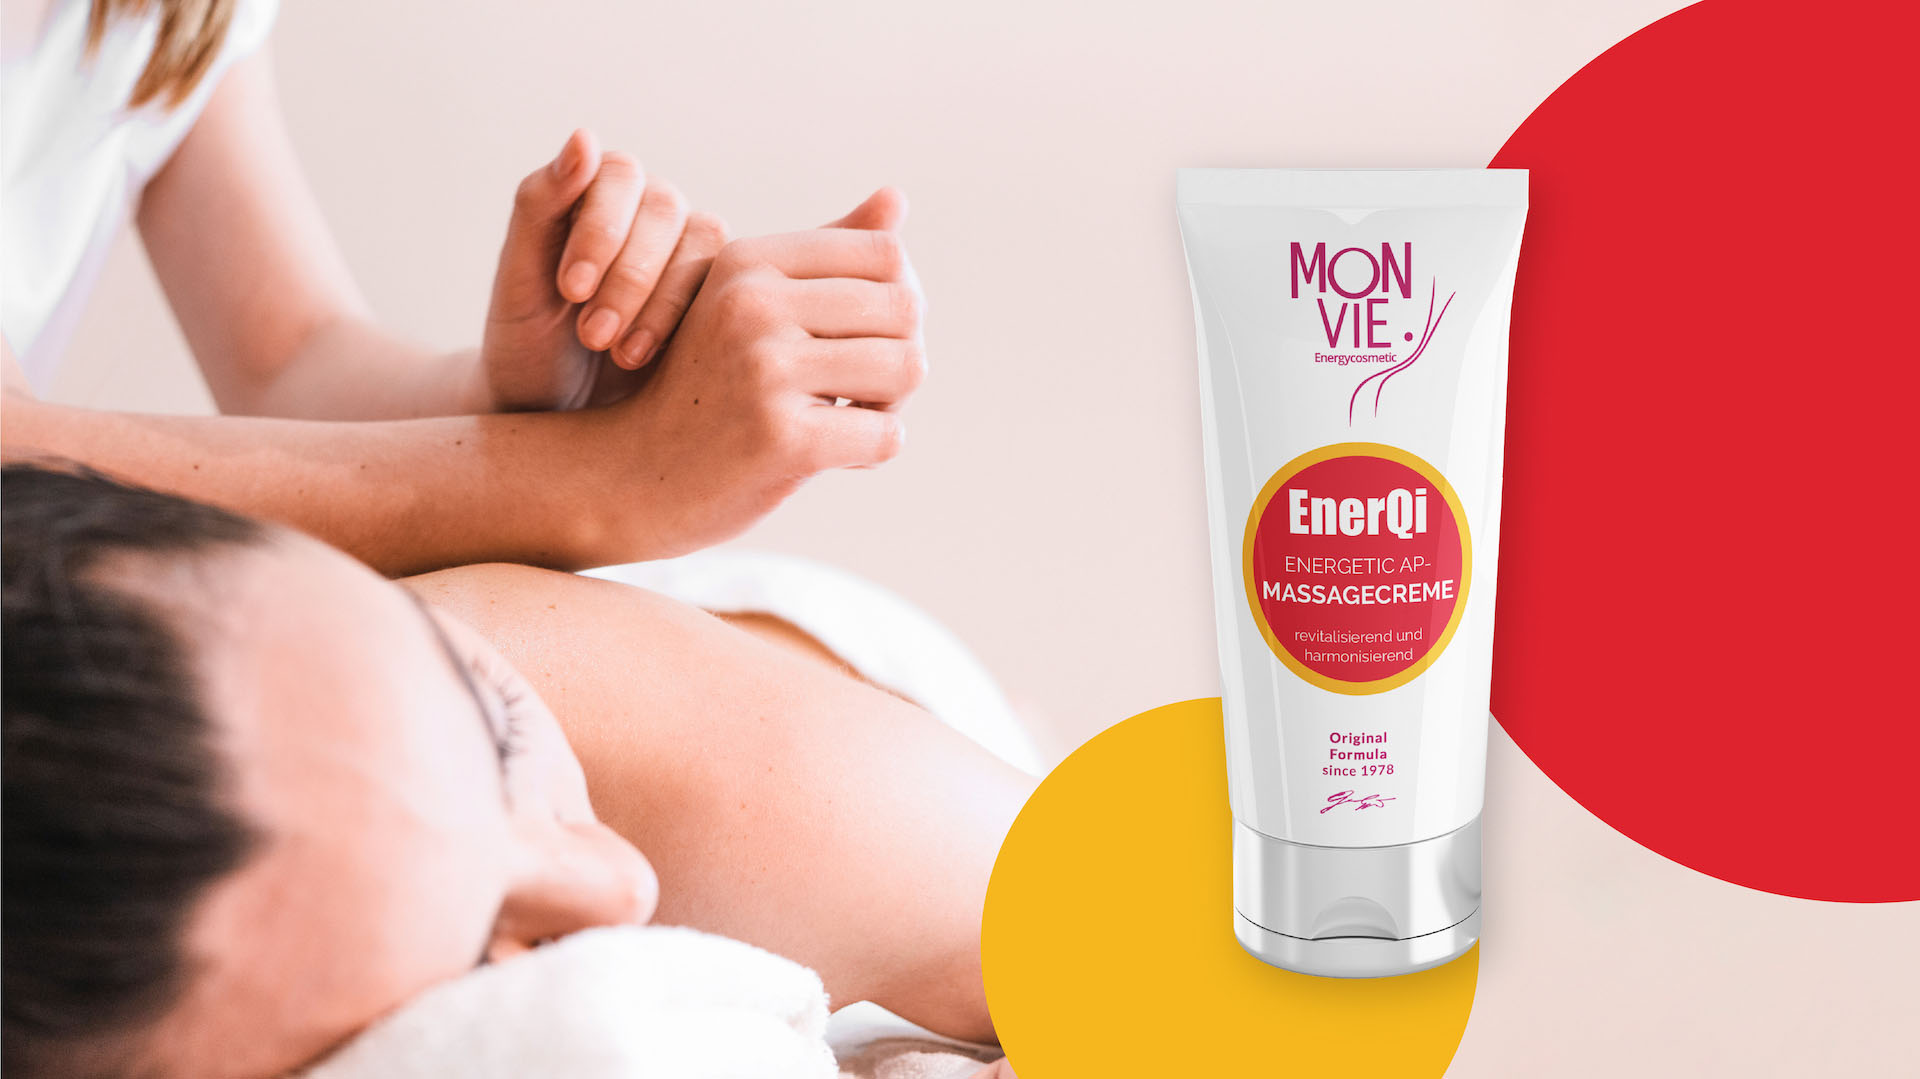 Monvie EnerQi Energiekosmetik - energetische Creme für eine gesunde und basische Haut - Banner für AP Massagecreme - revitalisierend und straffend - Frau wird vom Masseur behandelt